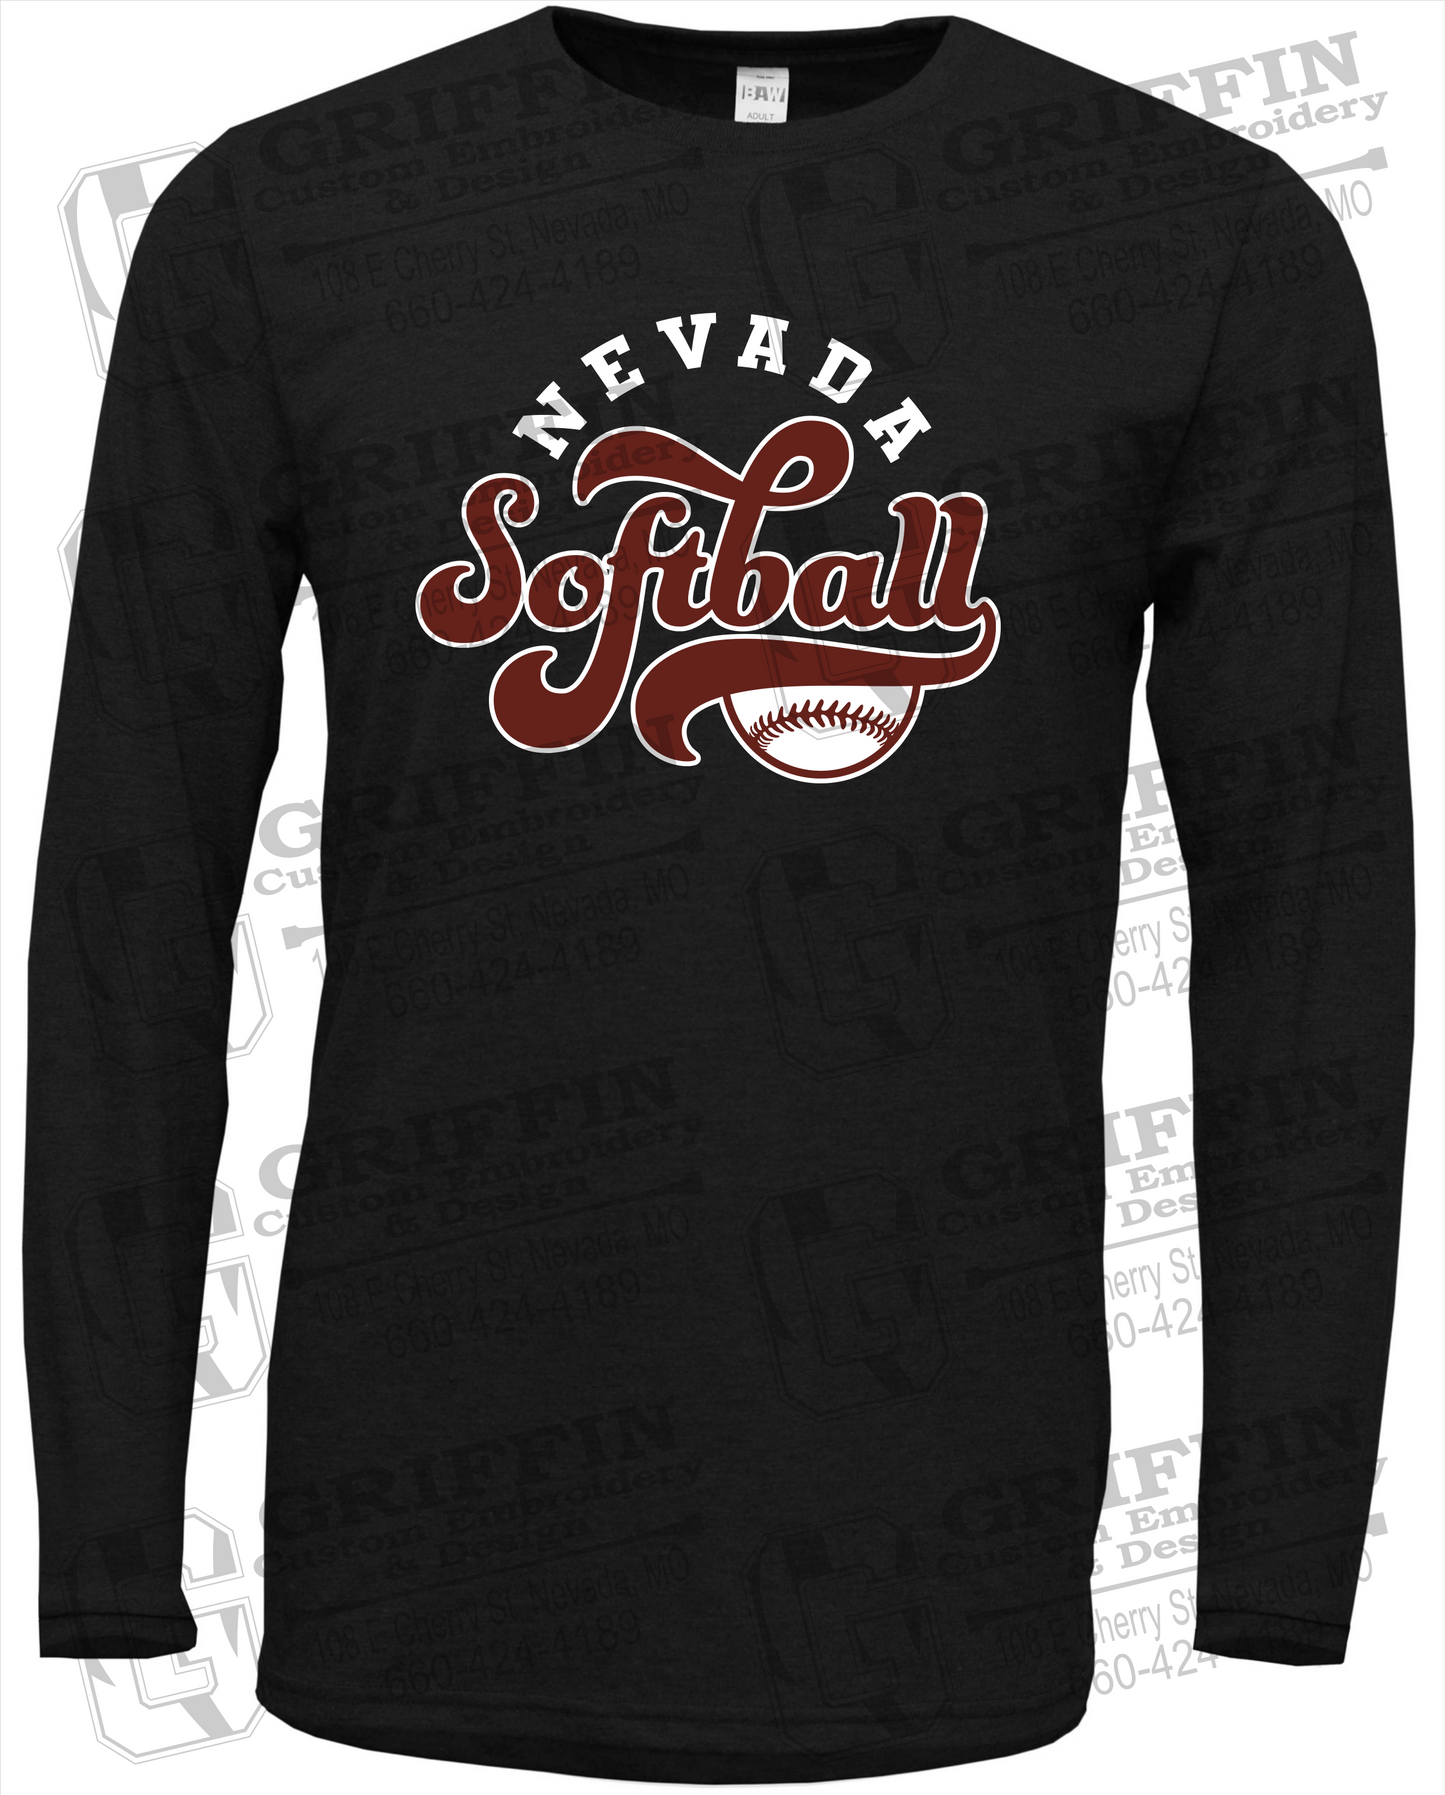 Soft-Tek Long Sleeve T-Shirt - Softball - Nevada Tigers 24-D